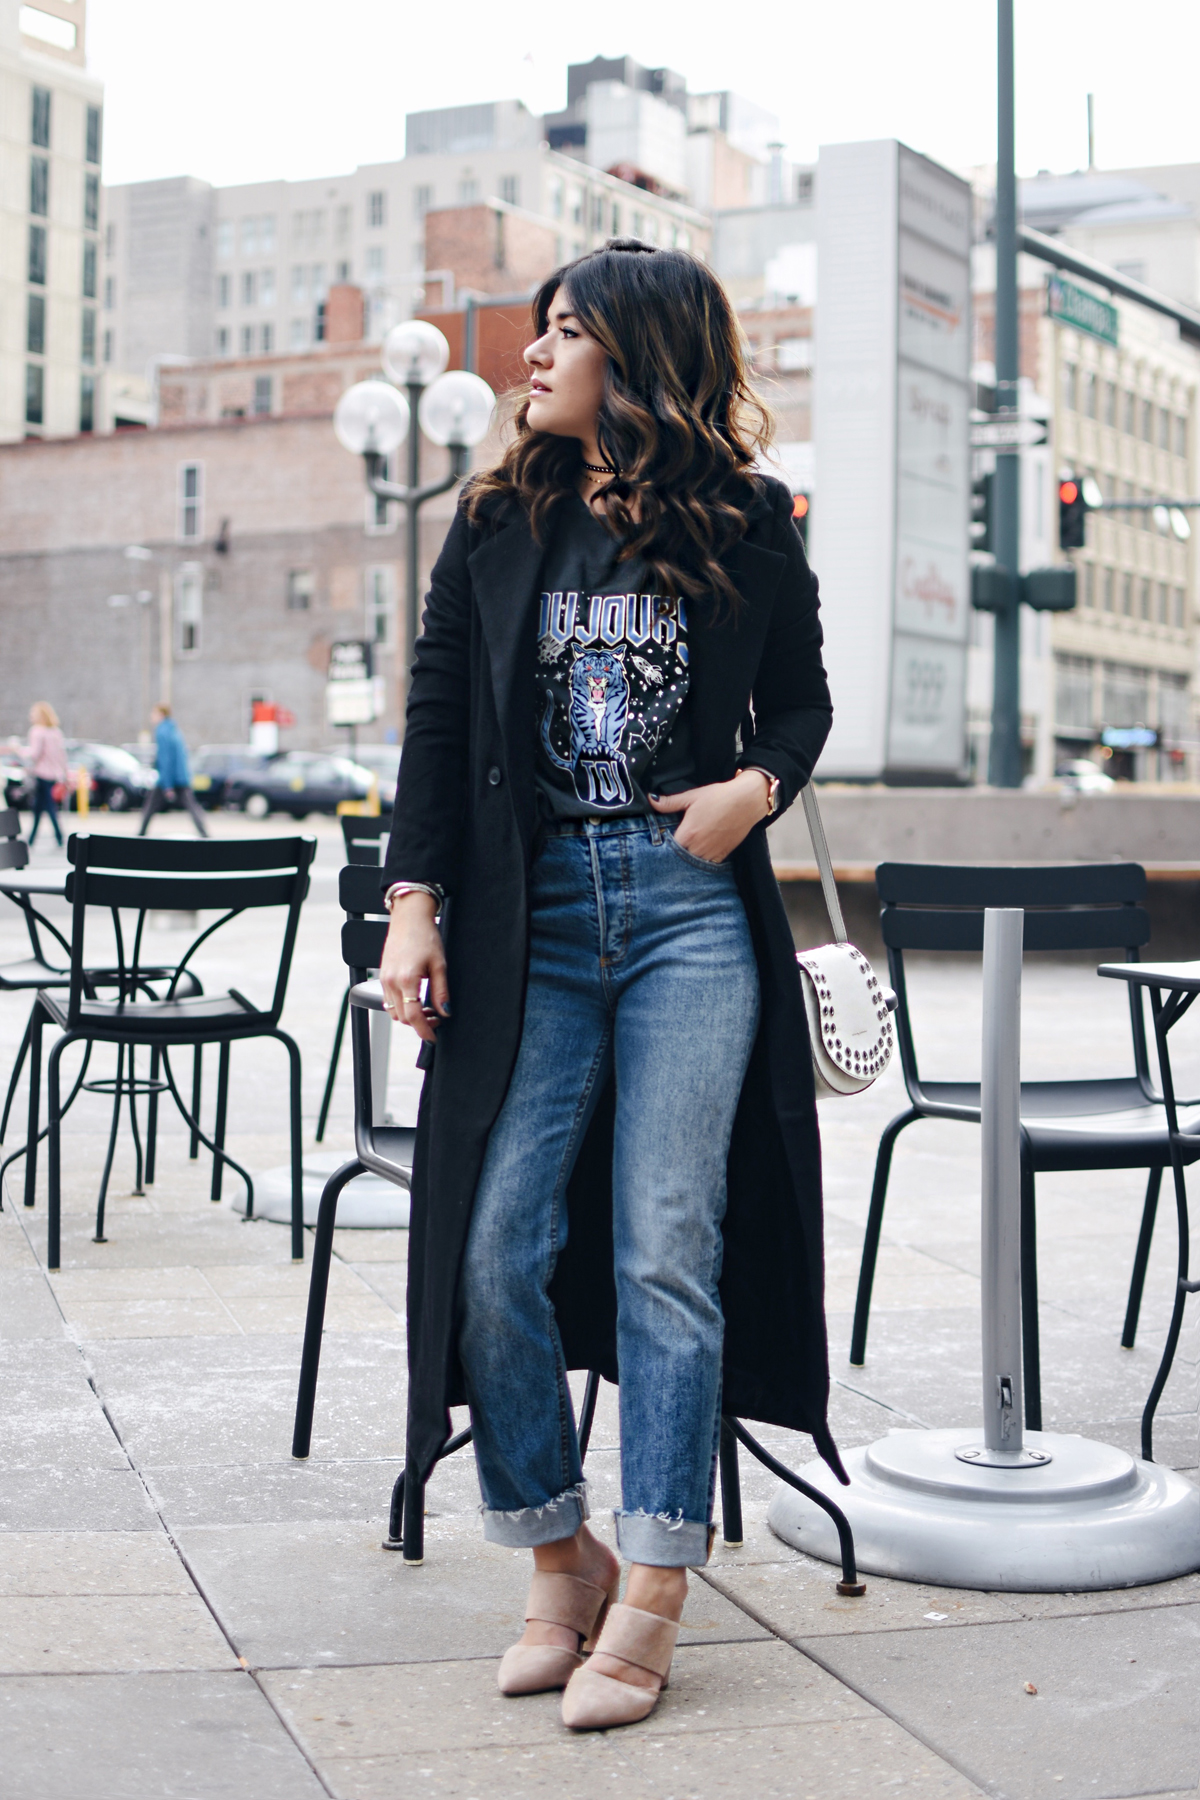 Gabel Beere Typisch girlfriend jeans outfit auslösen Gasthaus Vertrag